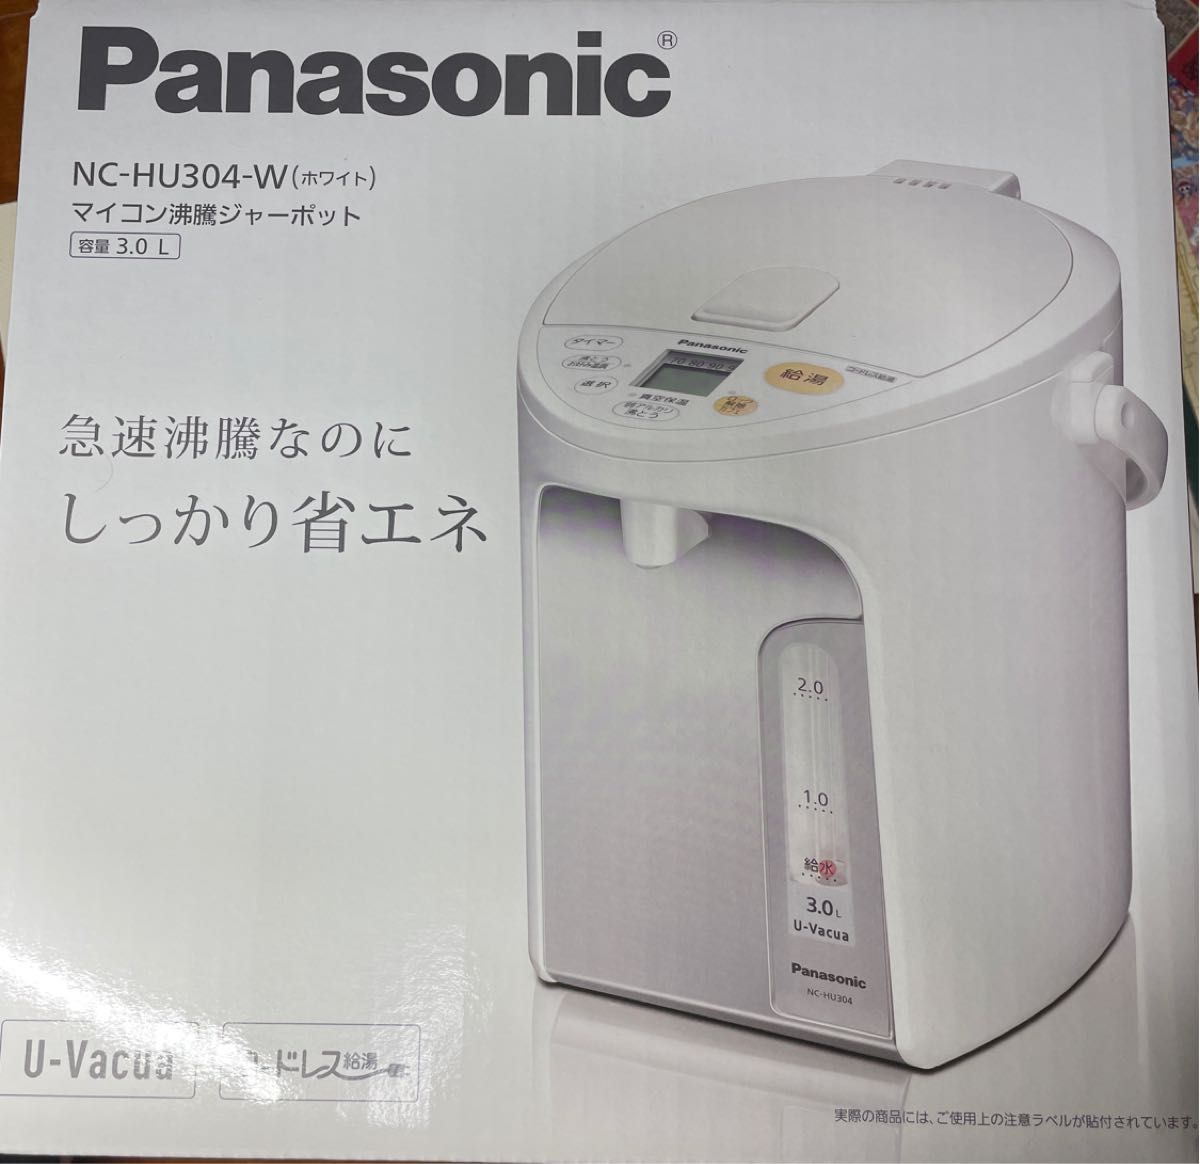 【新品未開封】Panasonic NC-HU304-Wマイコン沸騰ジャーポット3.0L コードレス給湯機能付き